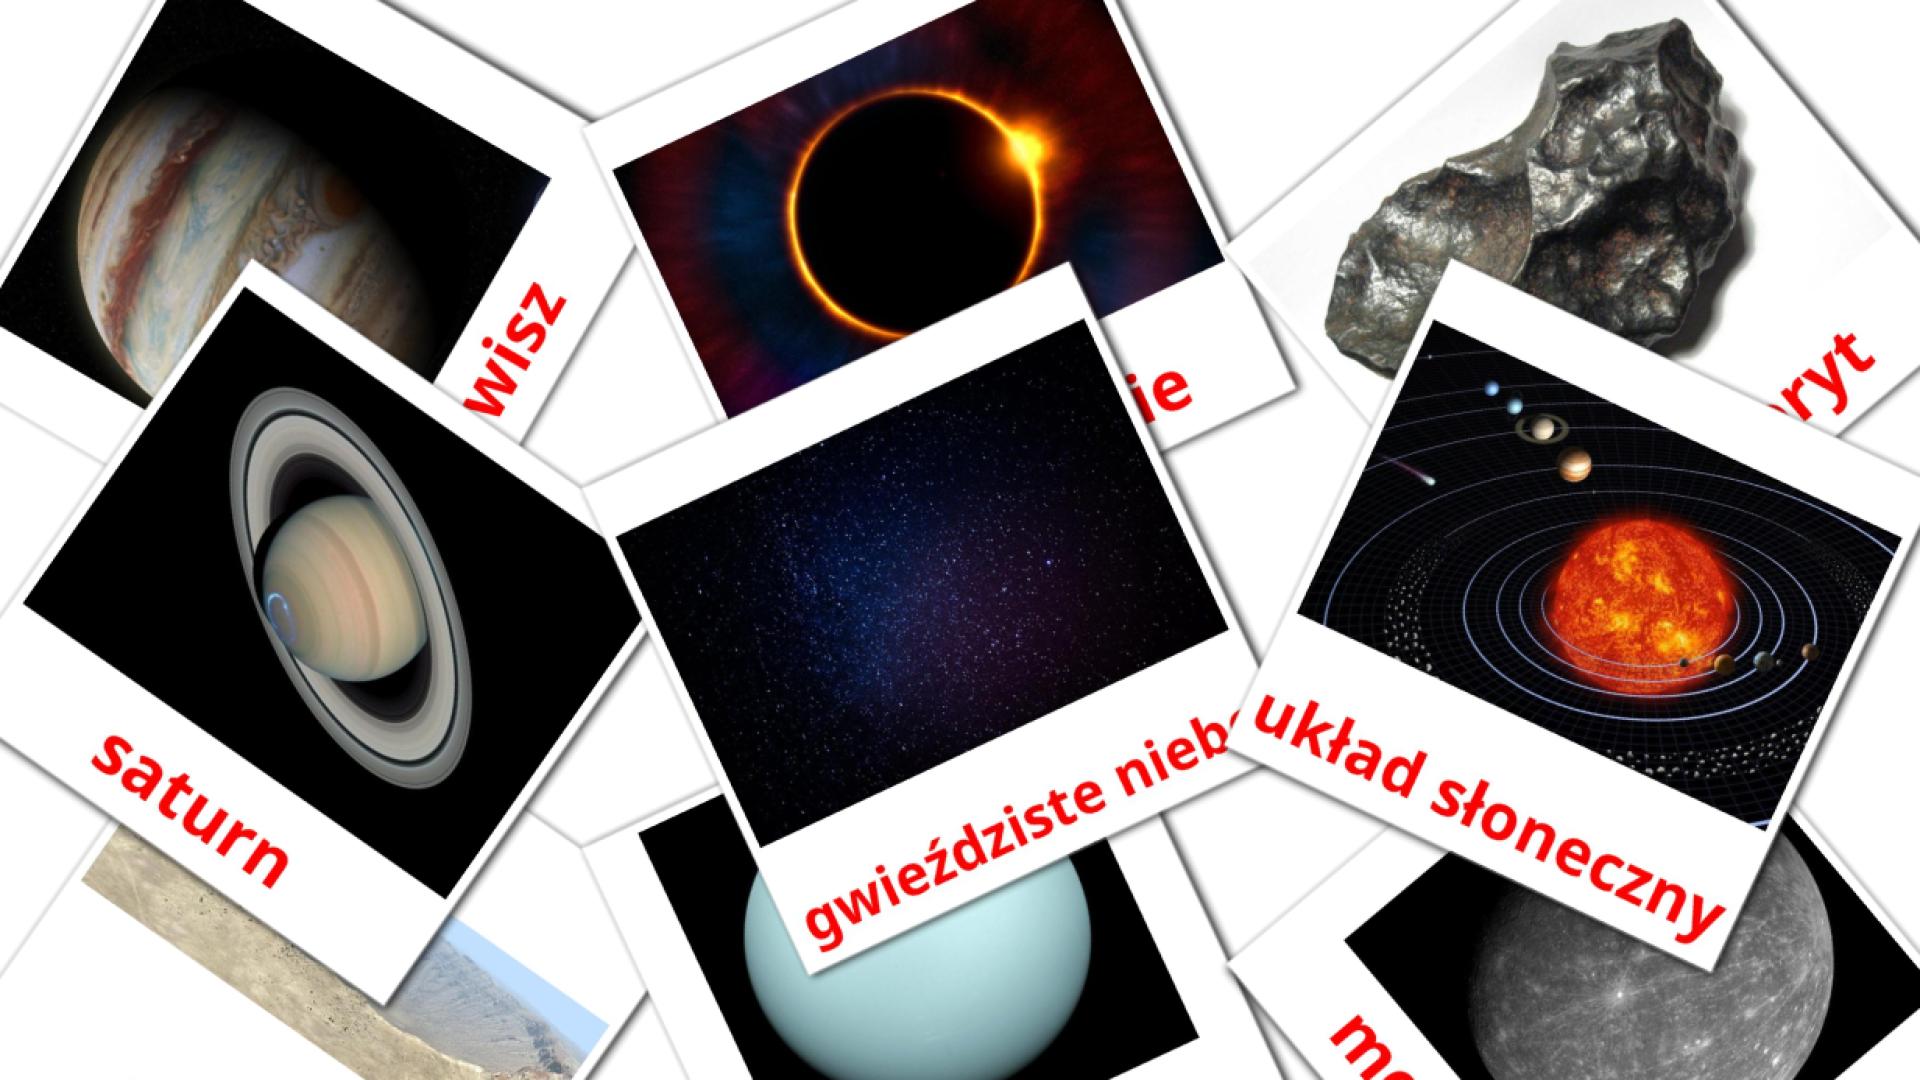 Bildkarten für System słoneczny